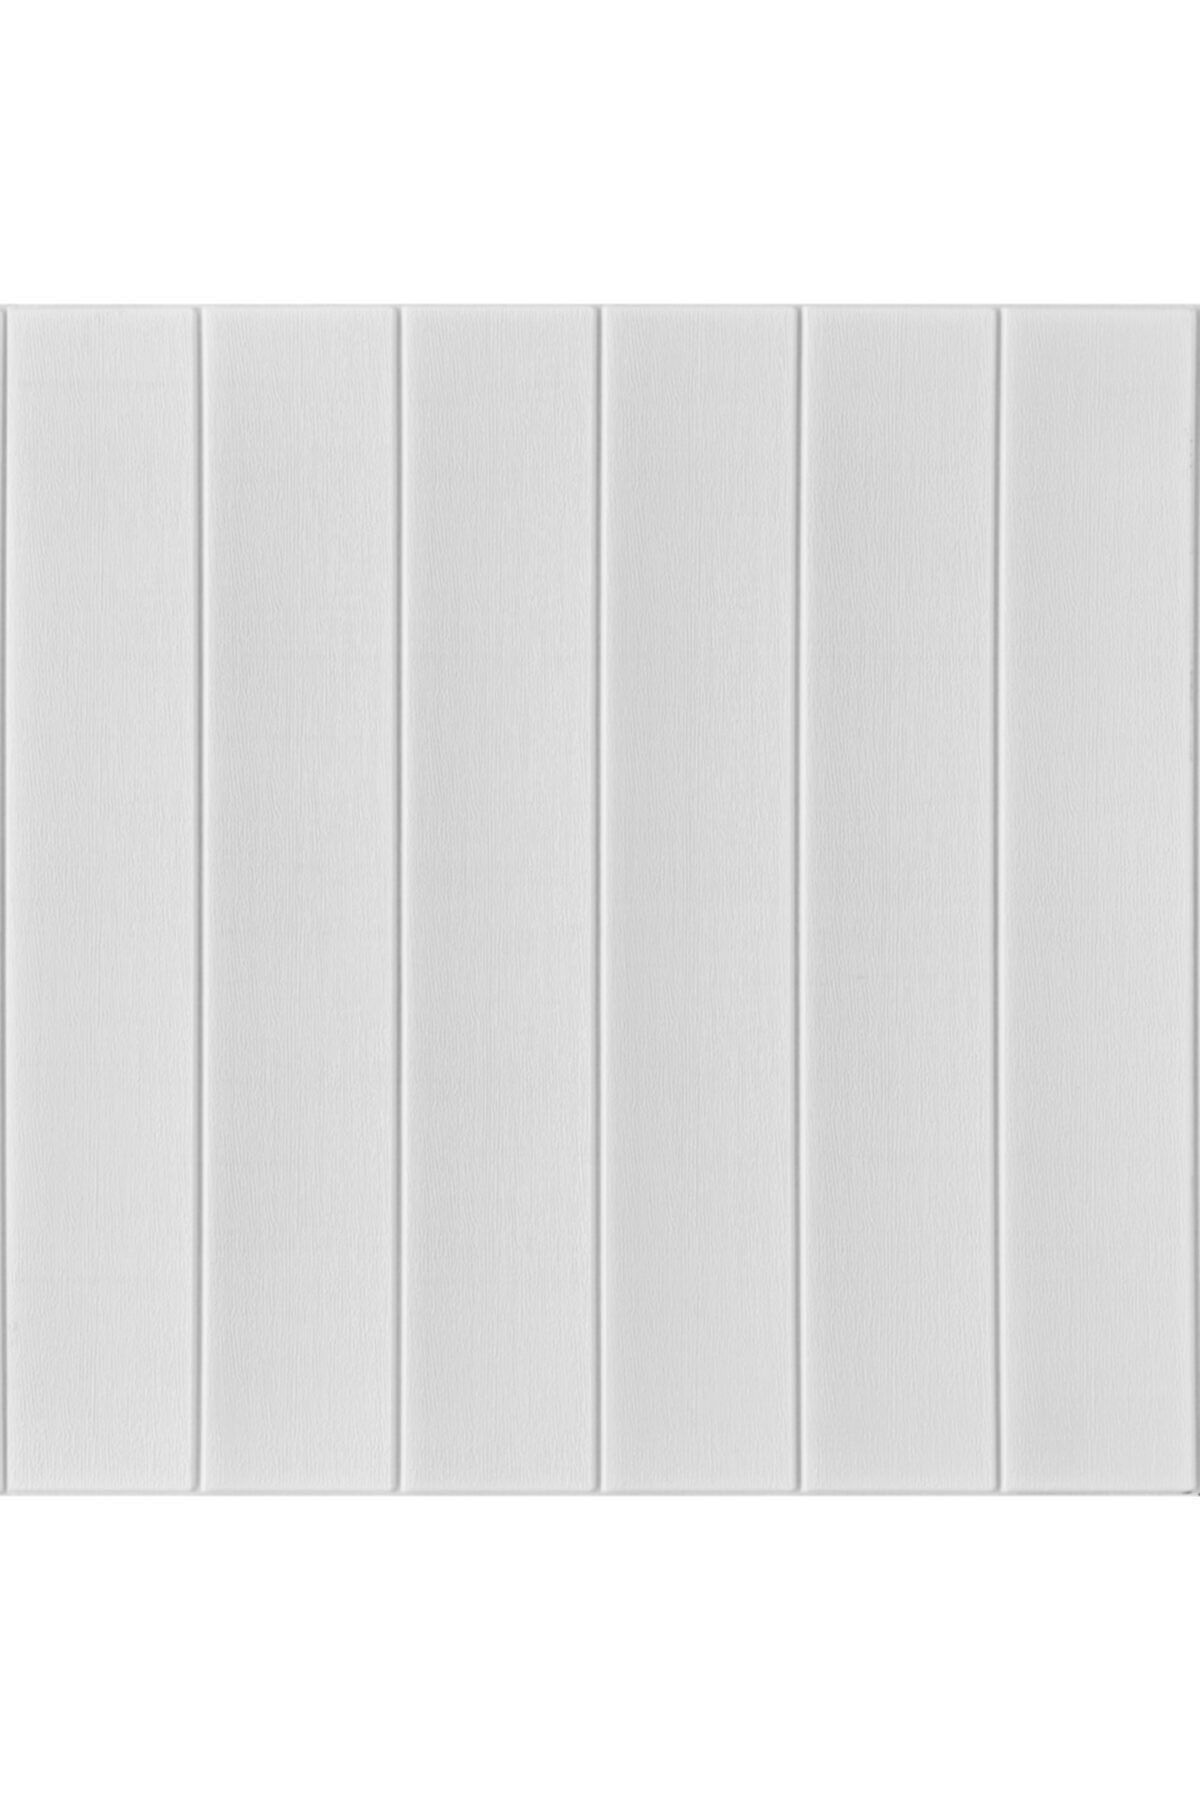 Renkli Duvarlar Nw43 Kendinden Yapışkanlı Beyaz Ahşap Kendinden Yapışkanlı Esnek Duvar Paneli 70x77 cm 6 Adet